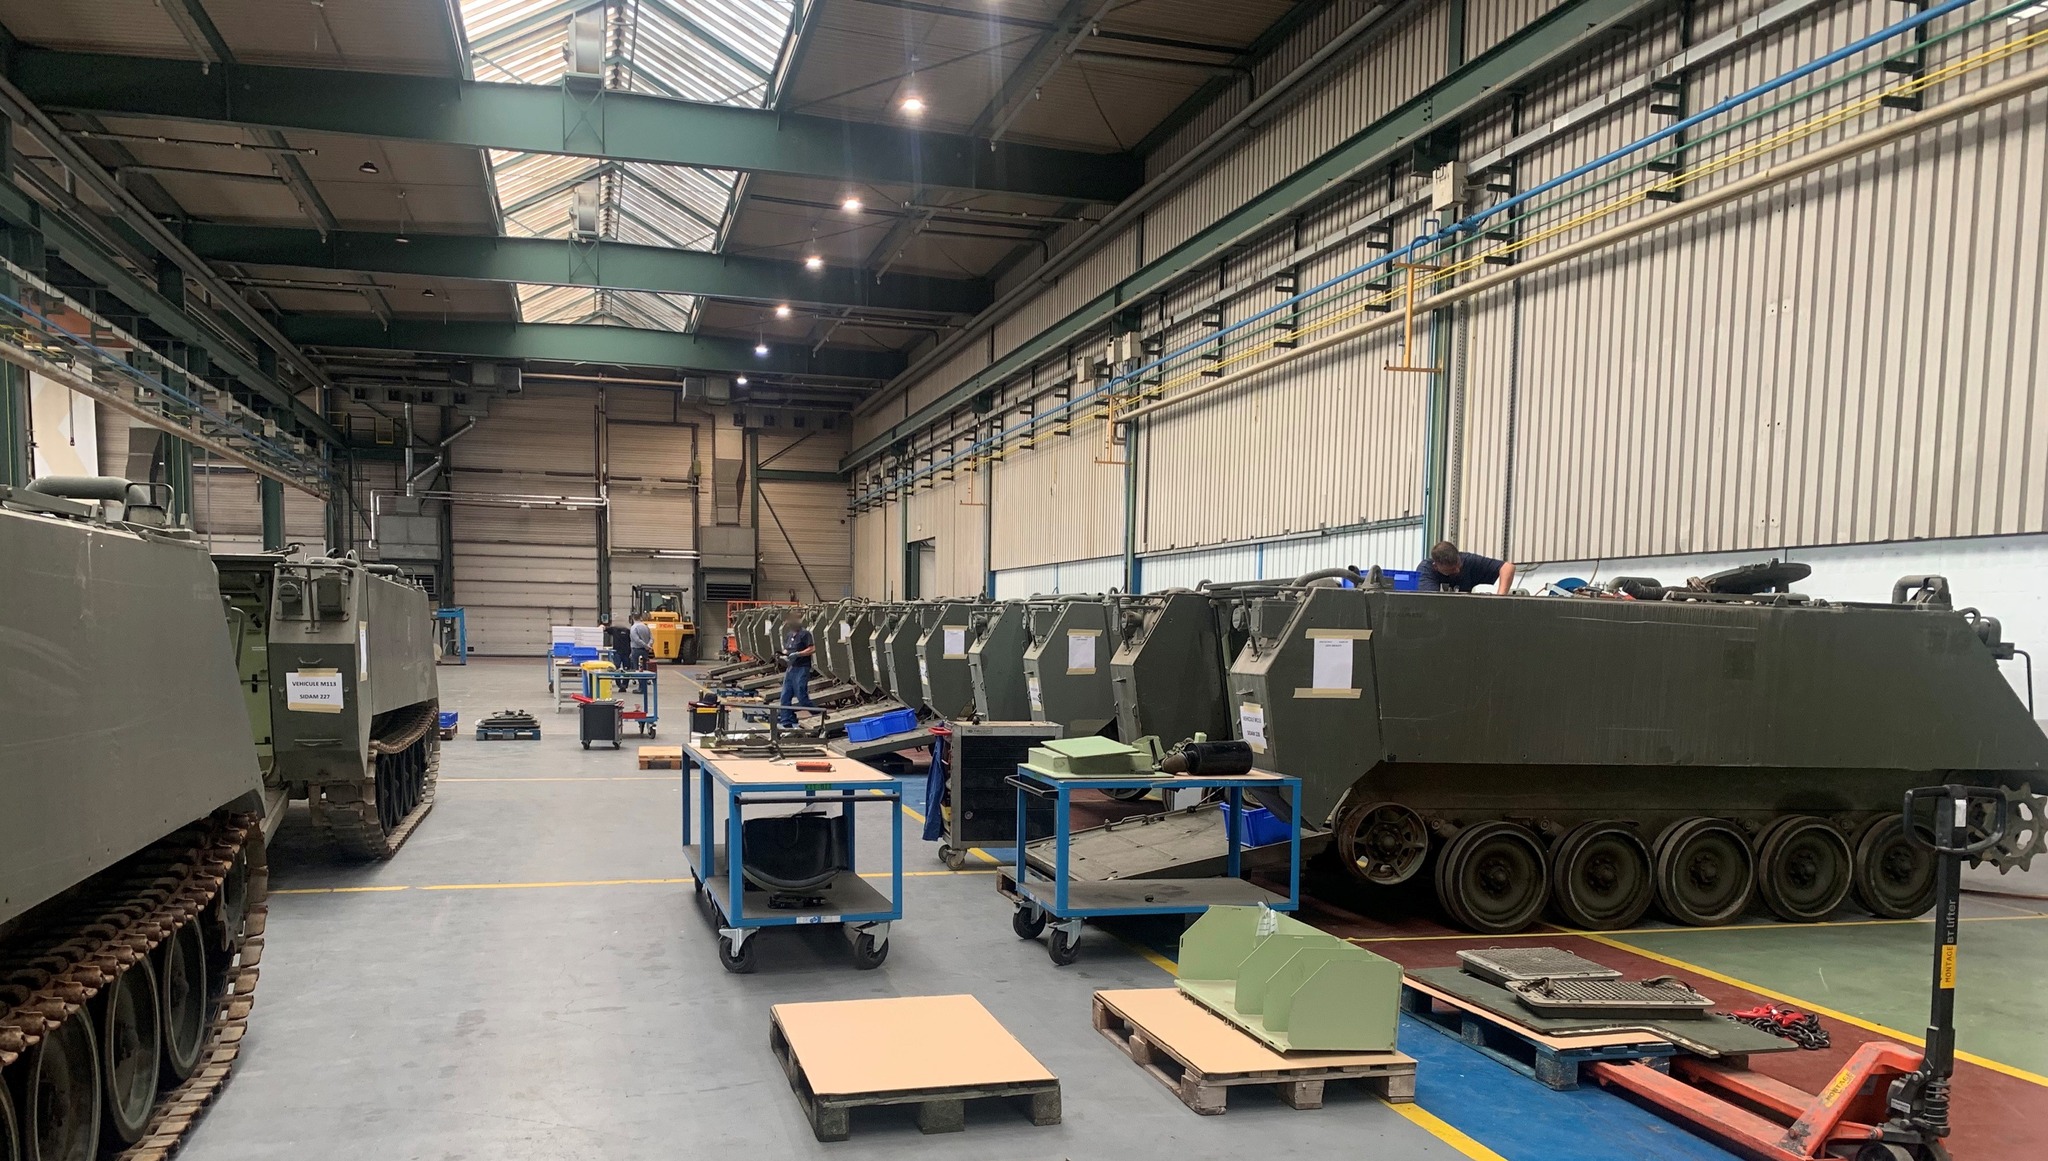 Бельгійська компанія John Cockerill модернізує бронетранспортери M113 для Збройних Сил України